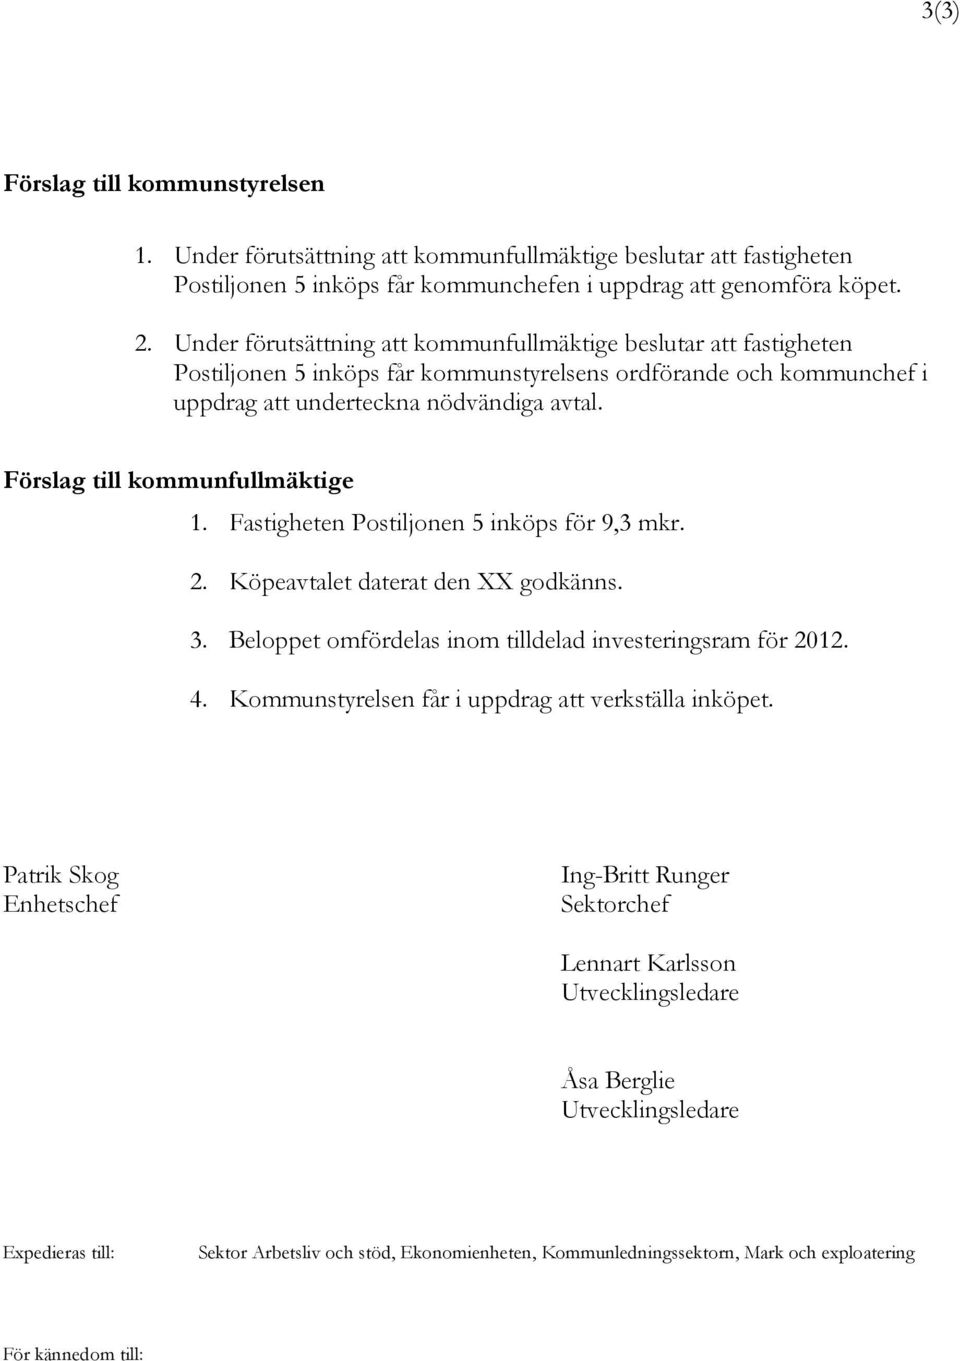 Förslag till kommunfullmäktige 1. Fastigheten Postiljonen 5 inköps för 9,3 mkr. 2. Köpeavtalet daterat den XX godkänns. 3. Beloppet omfördelas inom tilldelad investeringsram för 2012. 4.